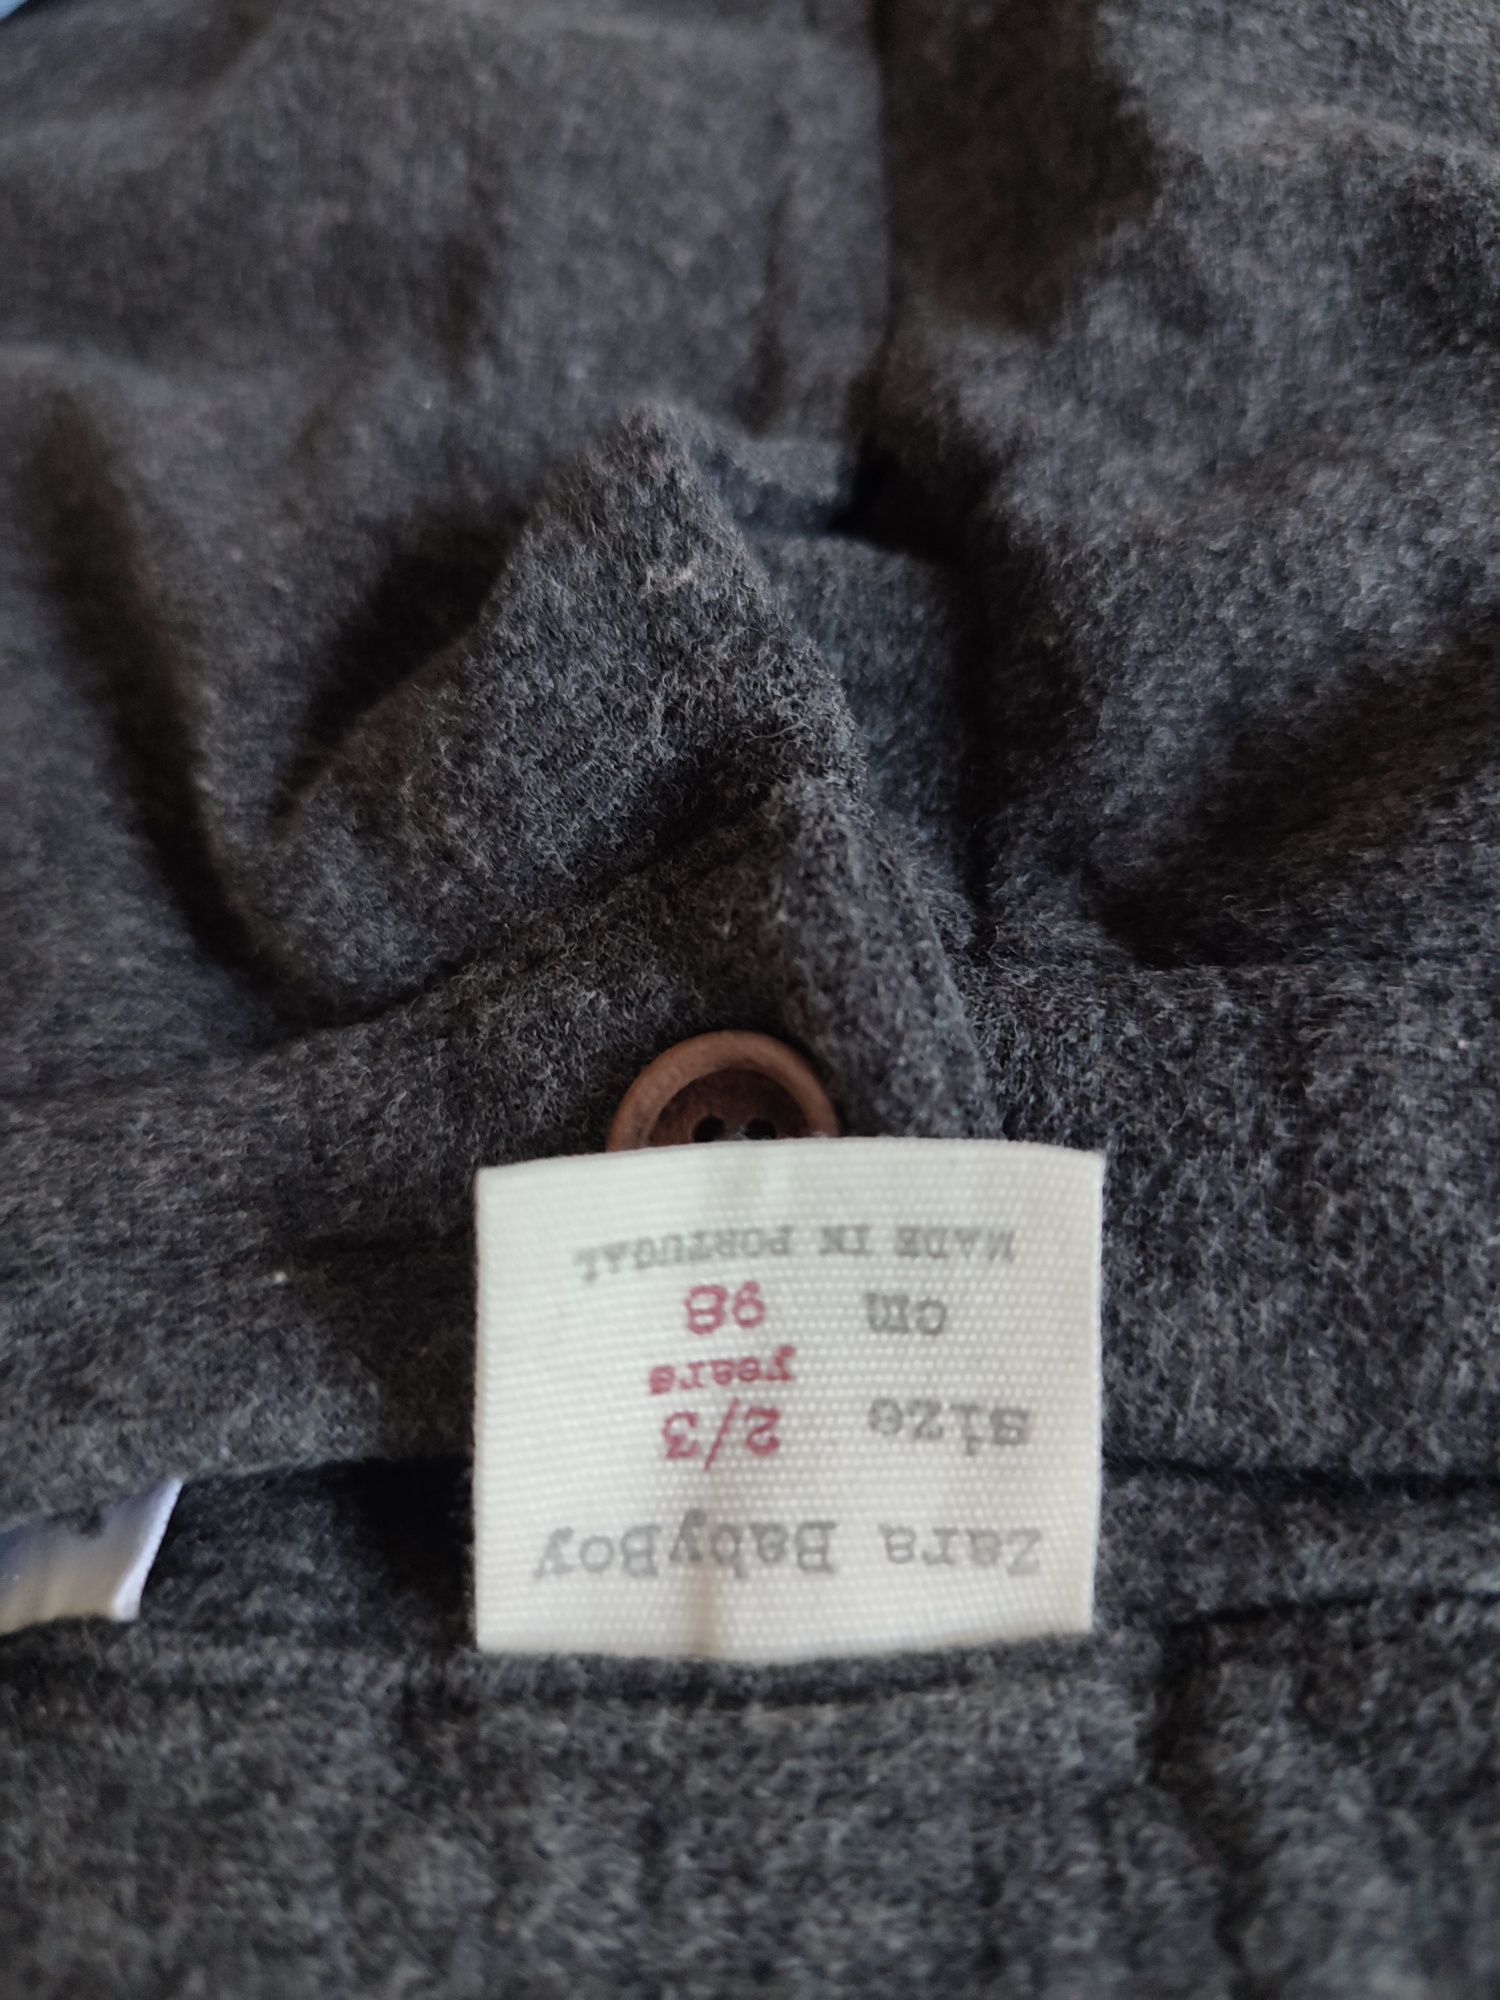 Spodnie, jeansy, joggersy H&M, Zara roz. 98